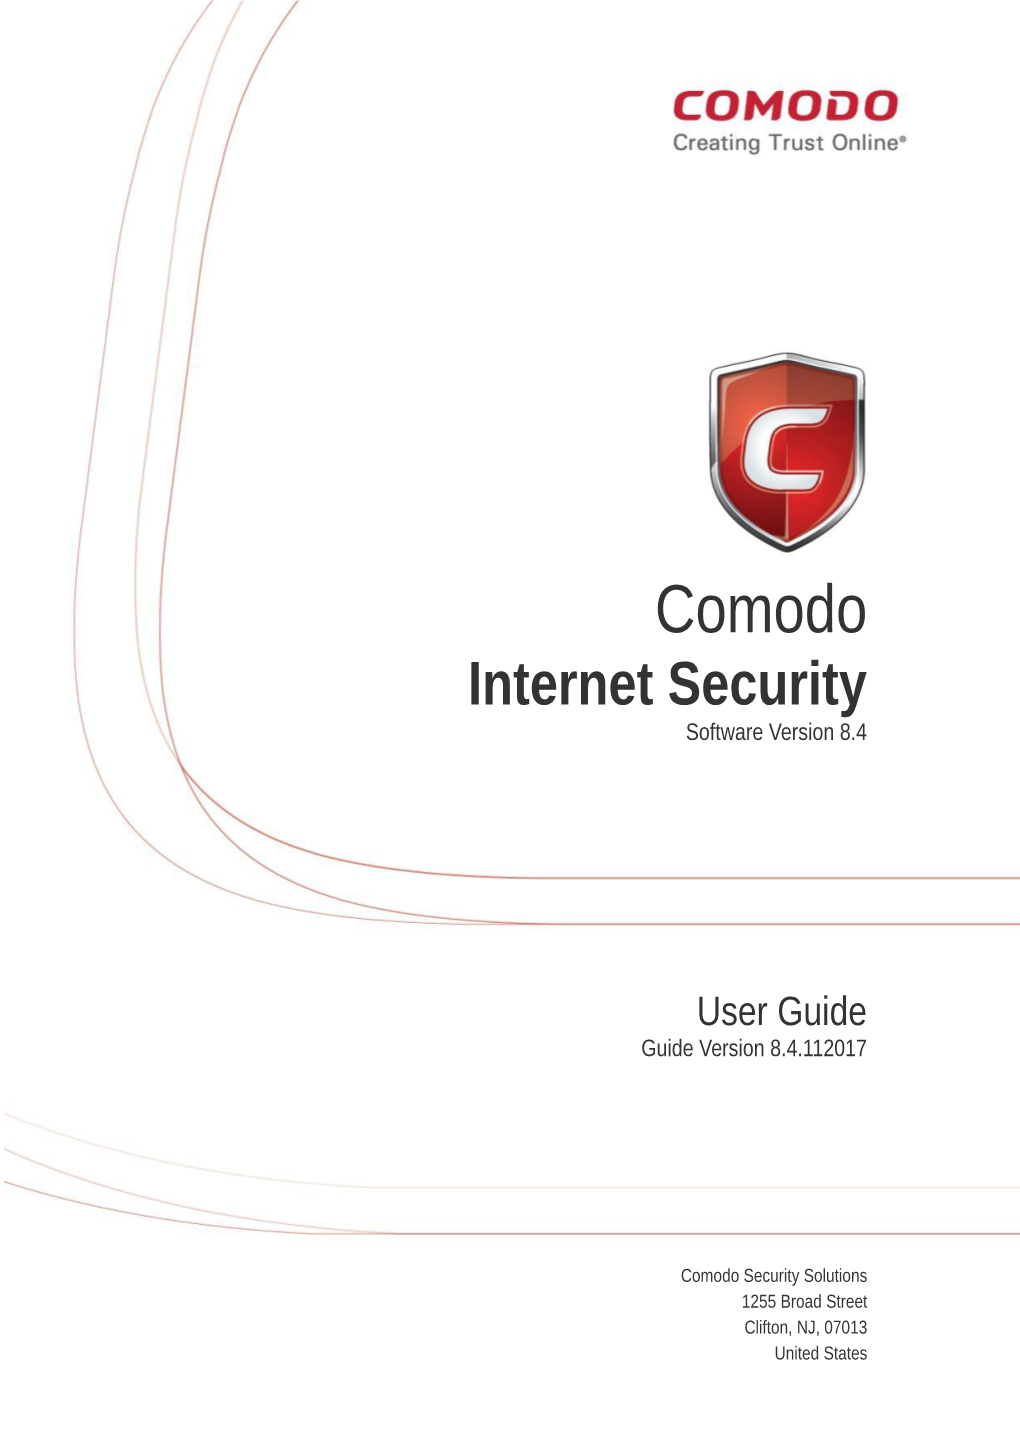 Comodo Internet Security User Guide | © 2017 Comodo Security Solutions Inc